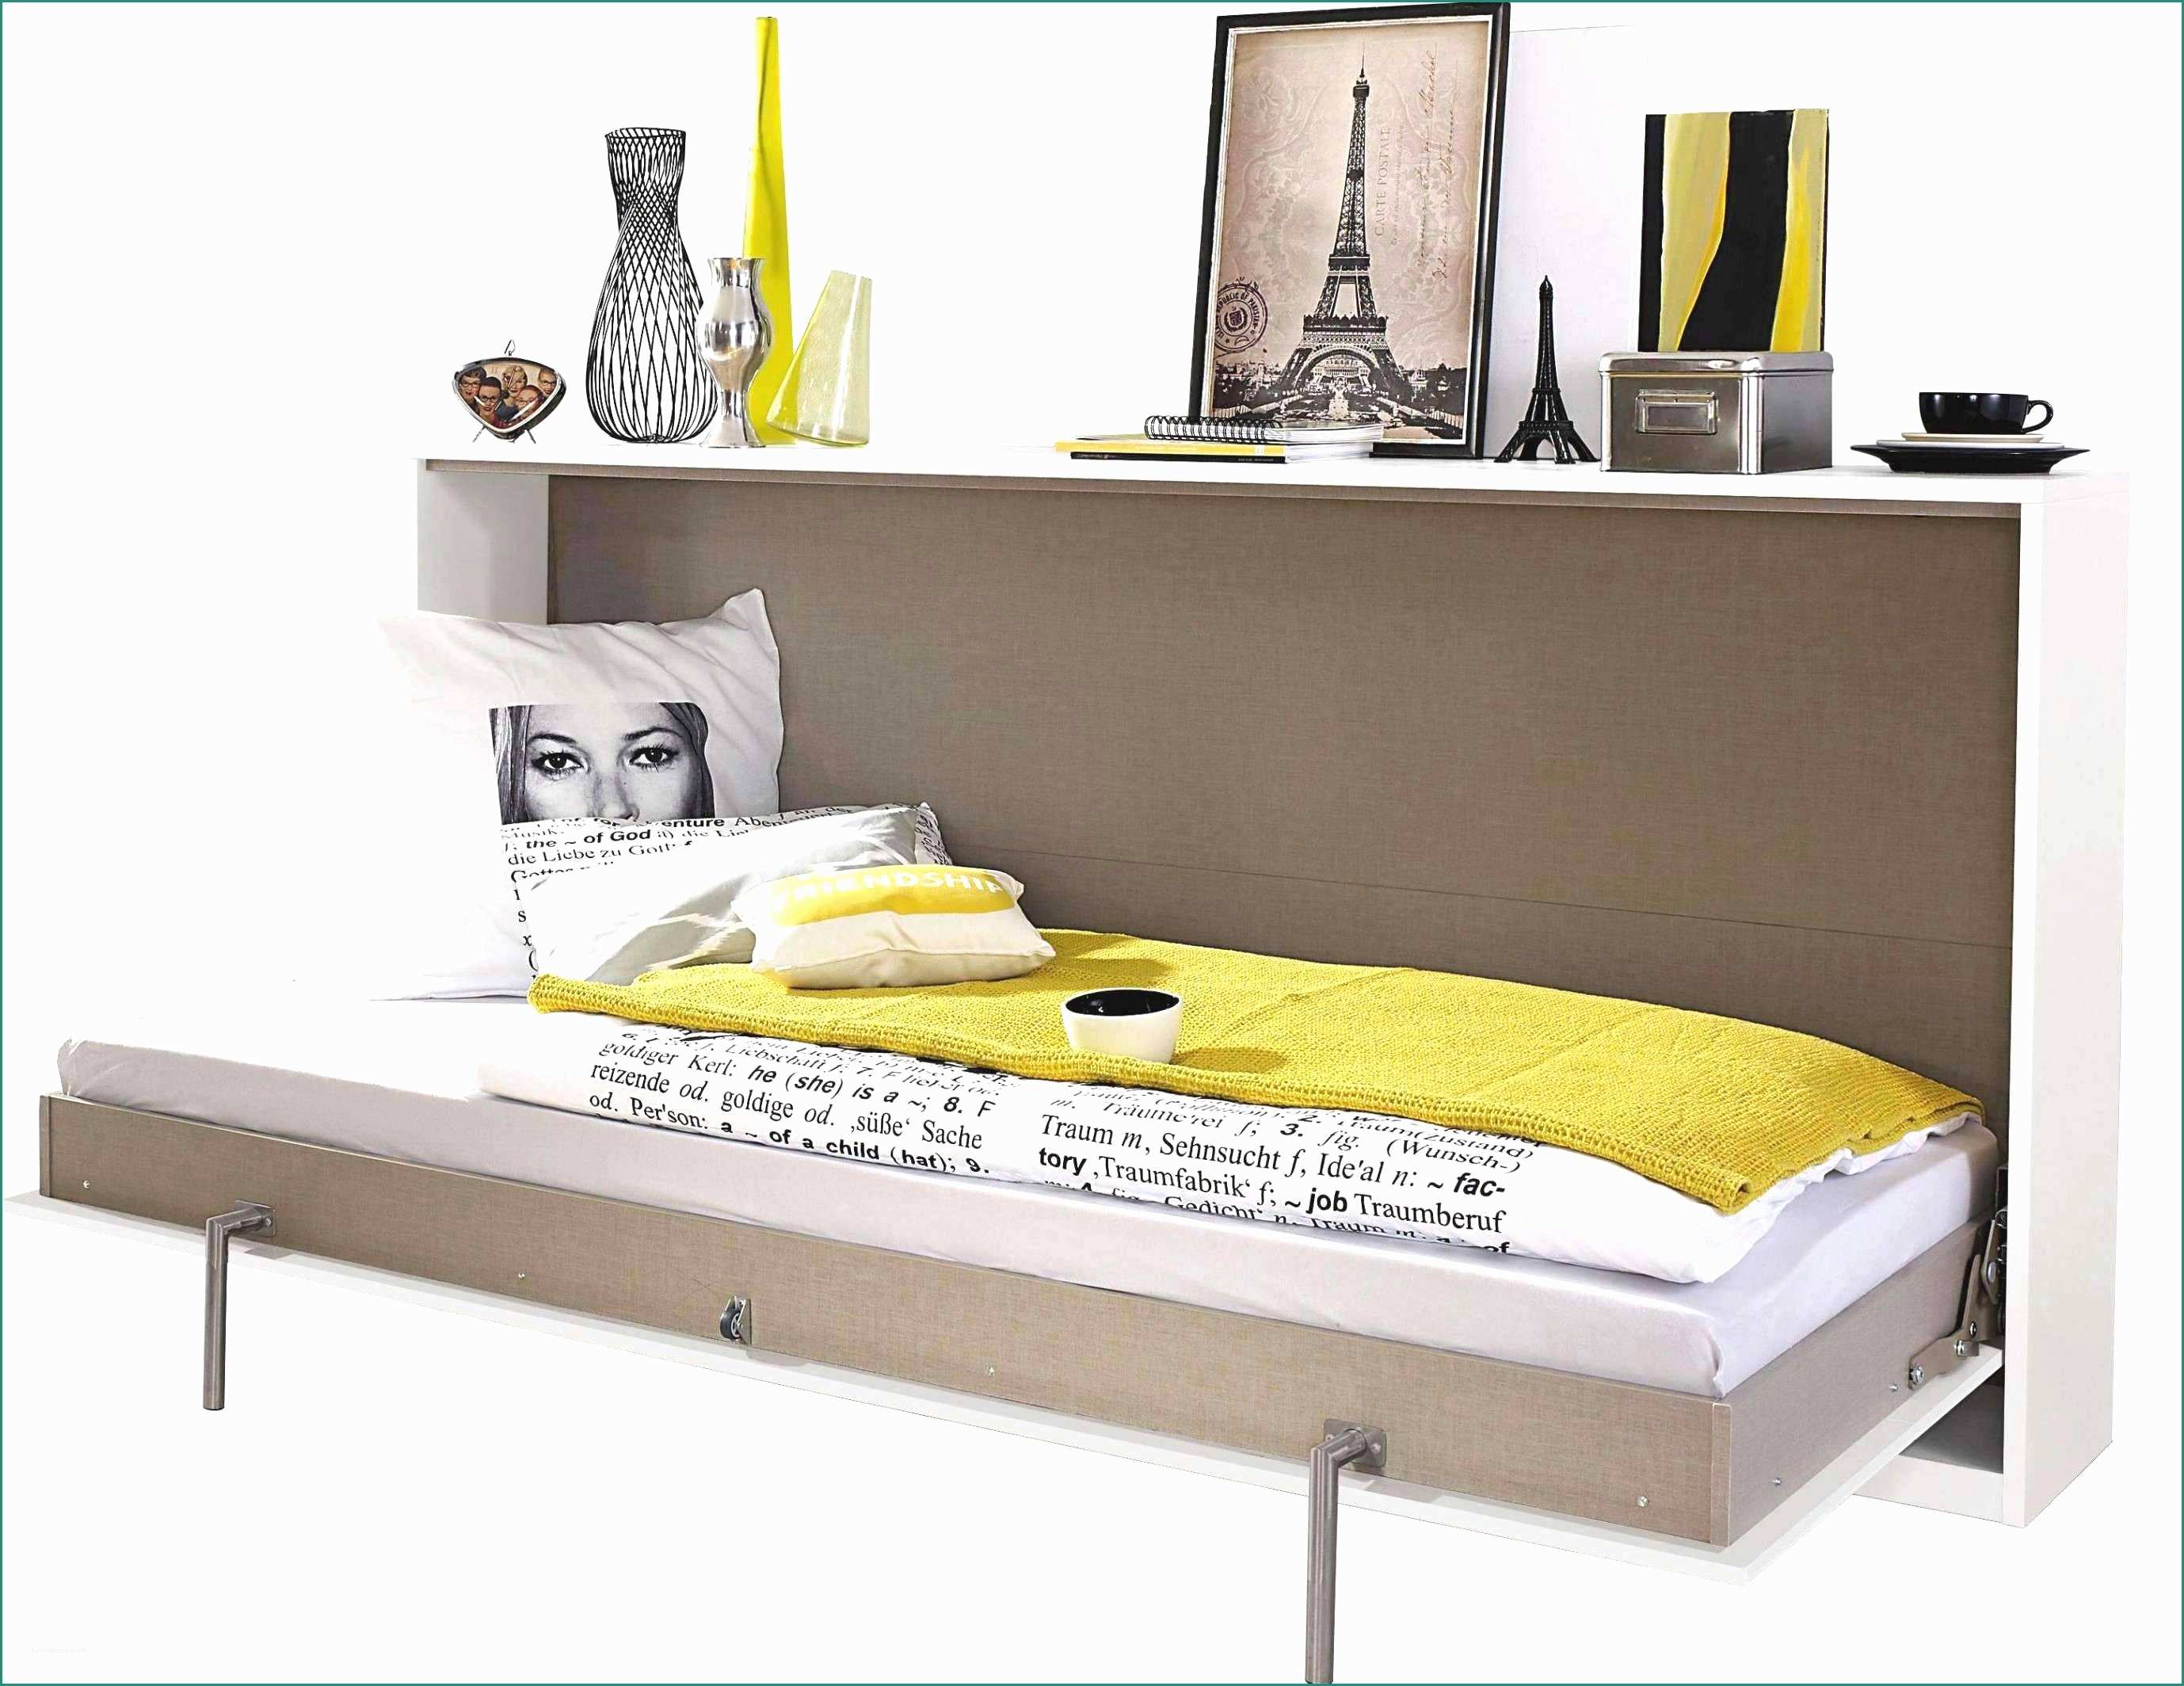 Prezzo Rame Usato Al Kg E tolle 29 Schlafzimmer Weiß Grau Ideen Wohnträume Verwirklichen tolle